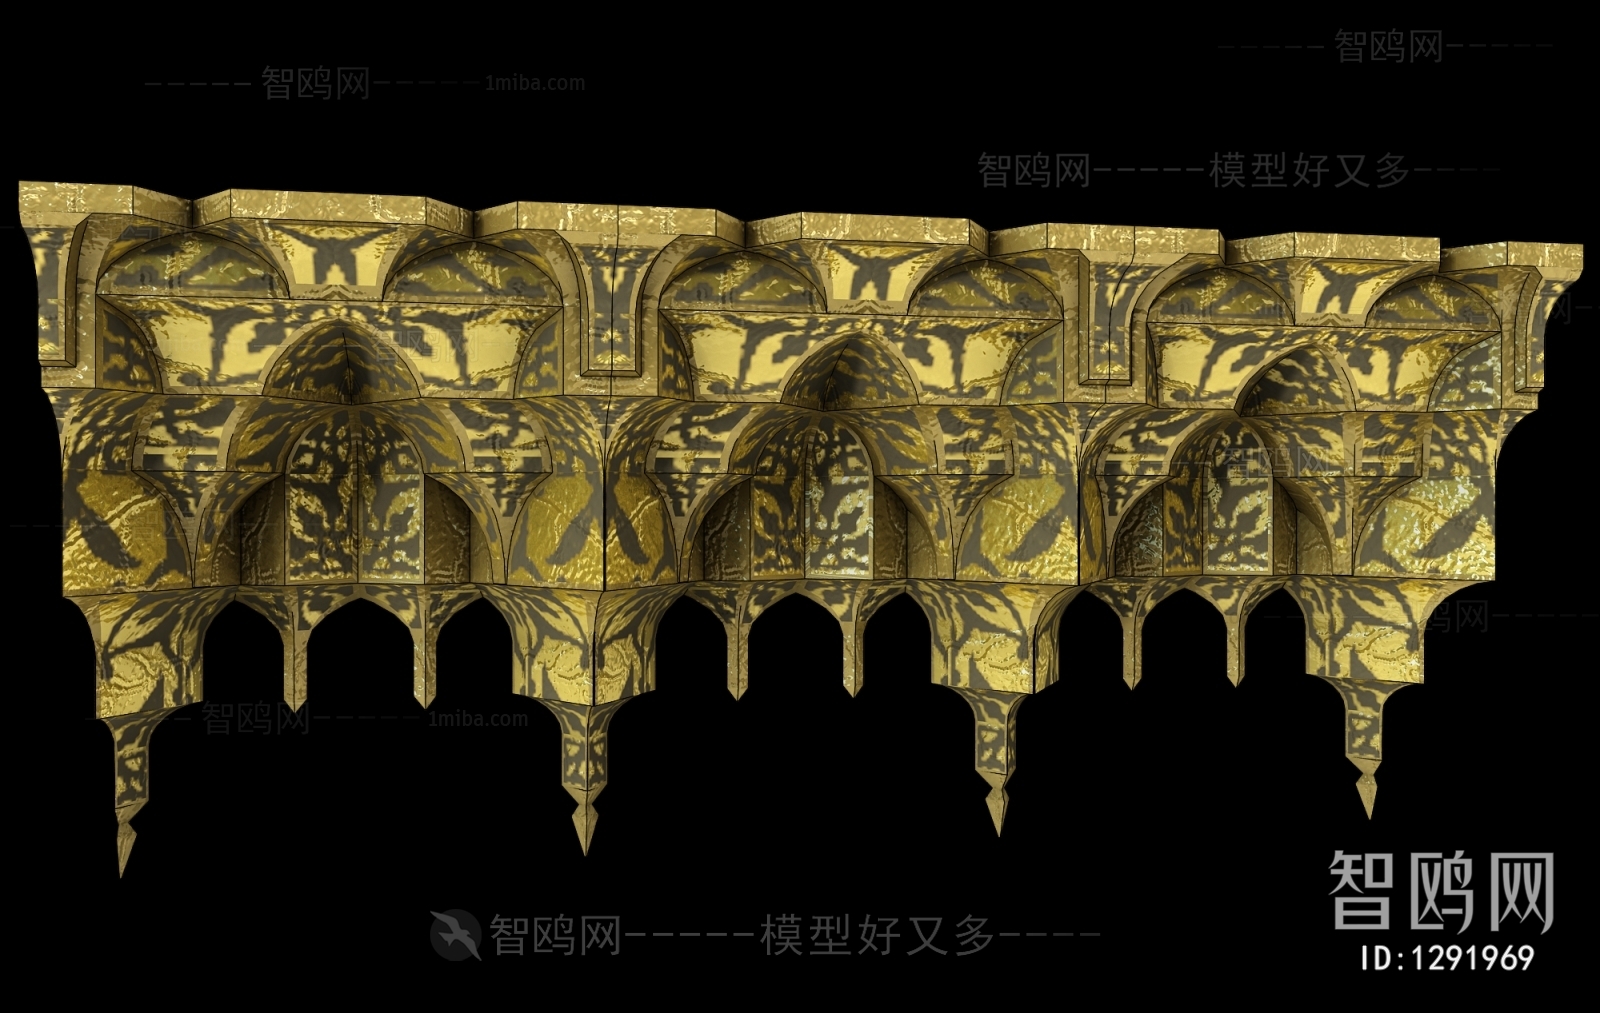 现代拱形门墙面造型斗拱 雕花构件